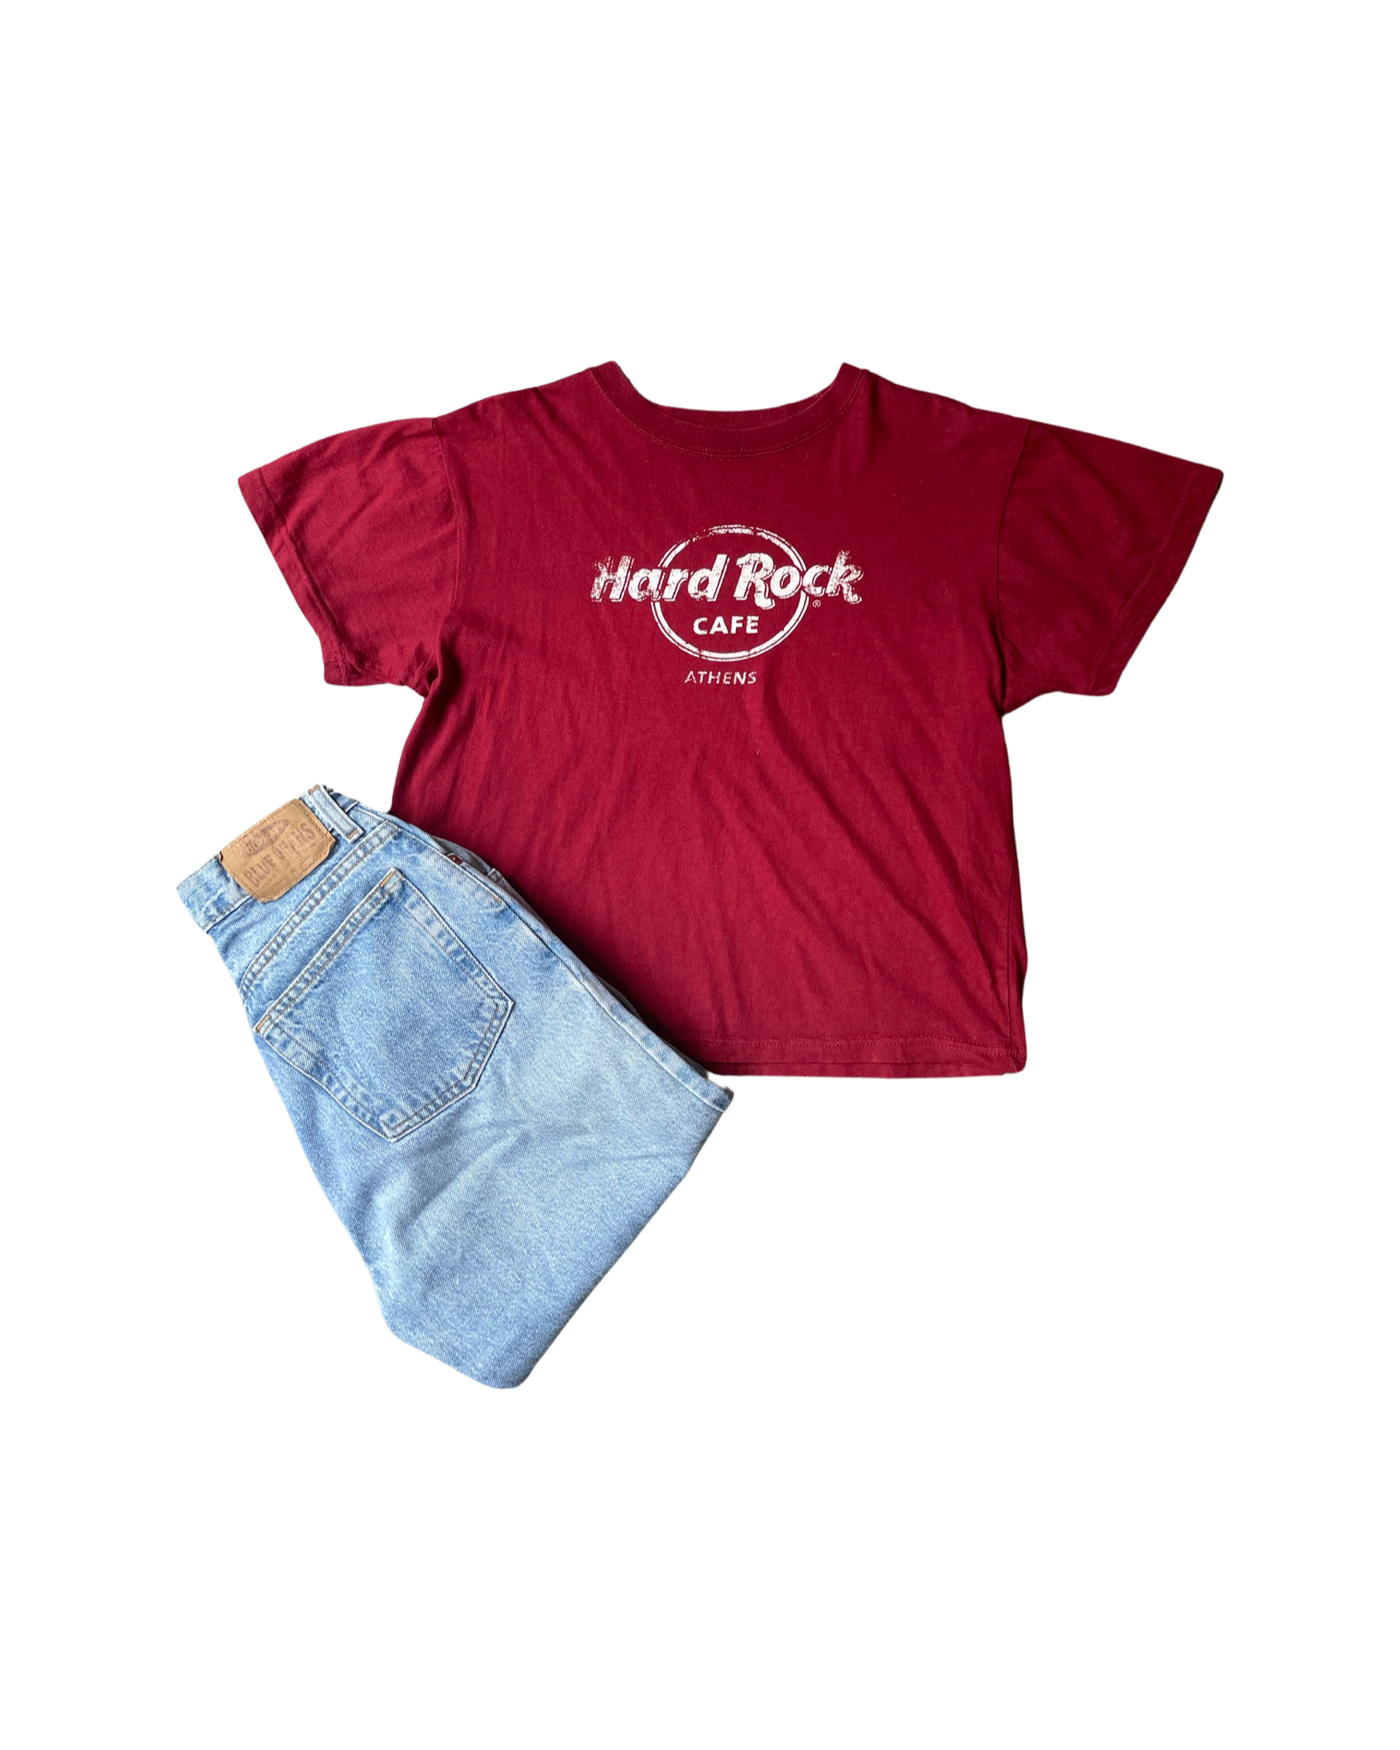 Vintage Hard Rock Cafe T-Shirt Size M